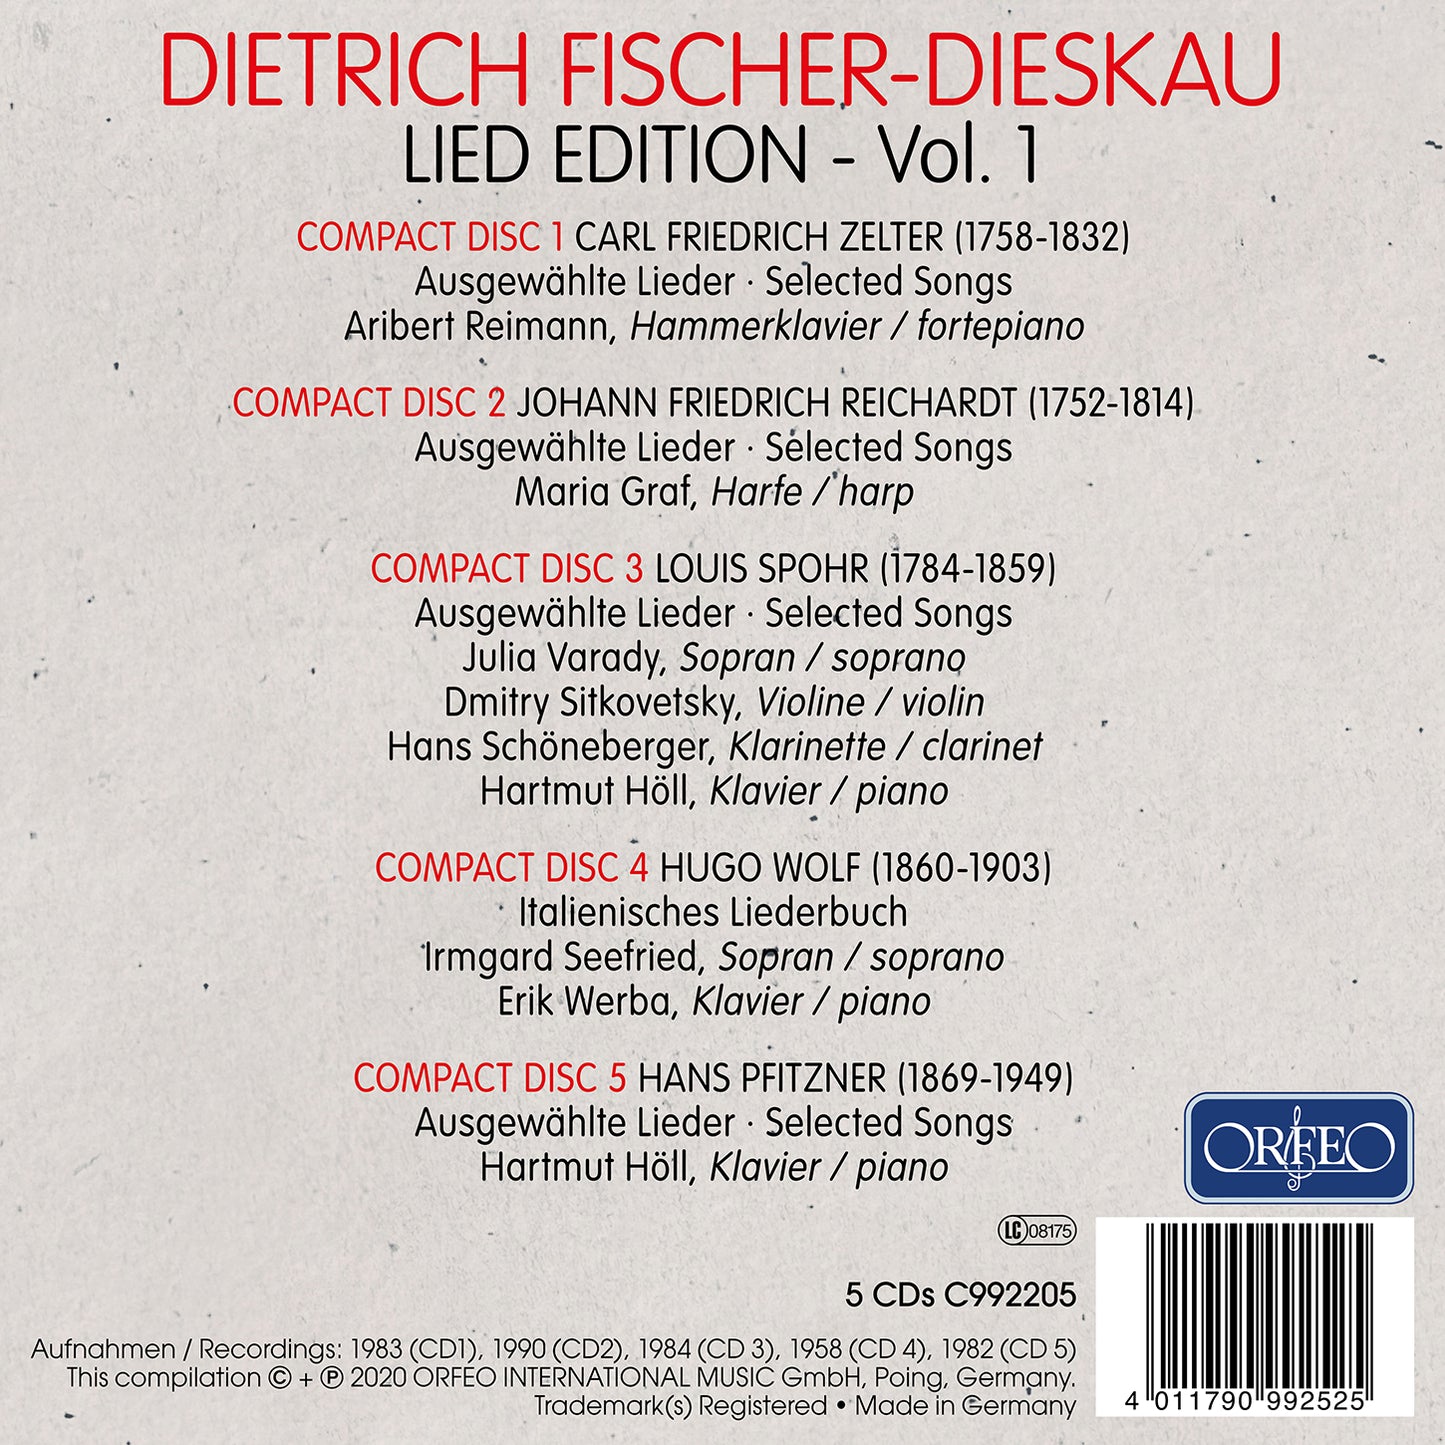 Dietrich Fischer-Dieskau: Lied Edition, Vol. 1